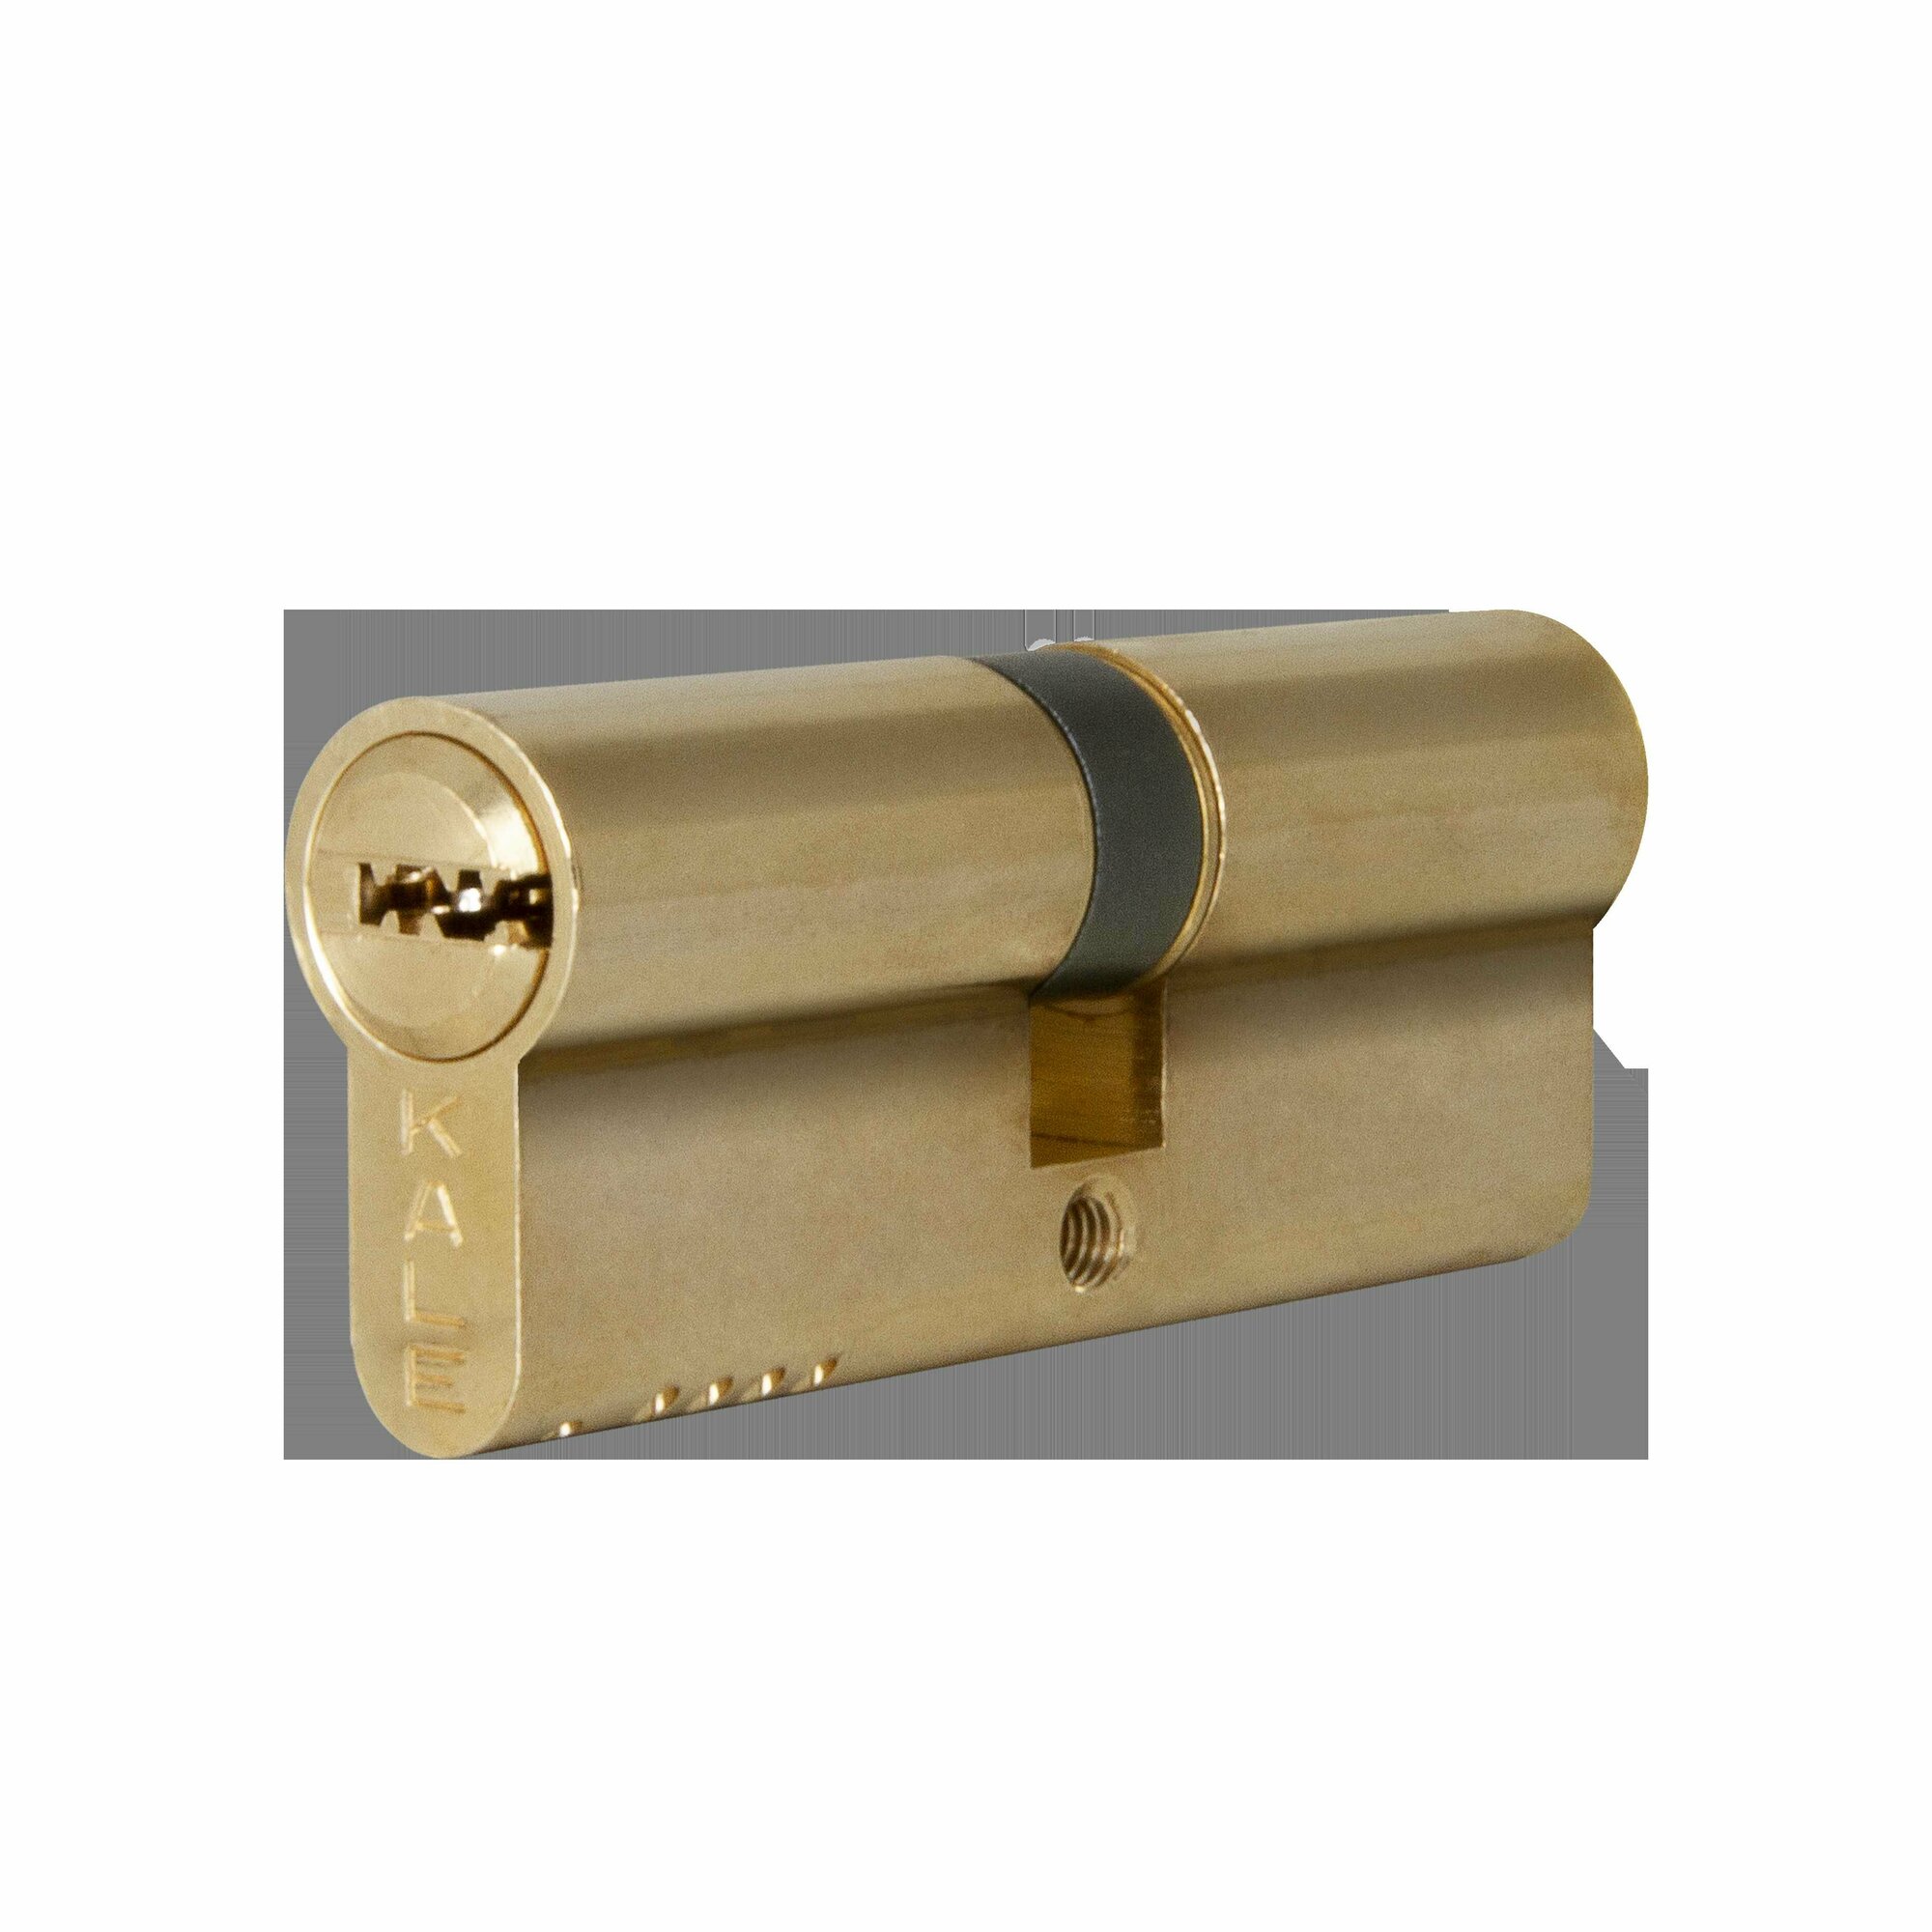 Цилиндр Kale Kilit 164 OBS 45x45 мм ключ/ключ цвет золото